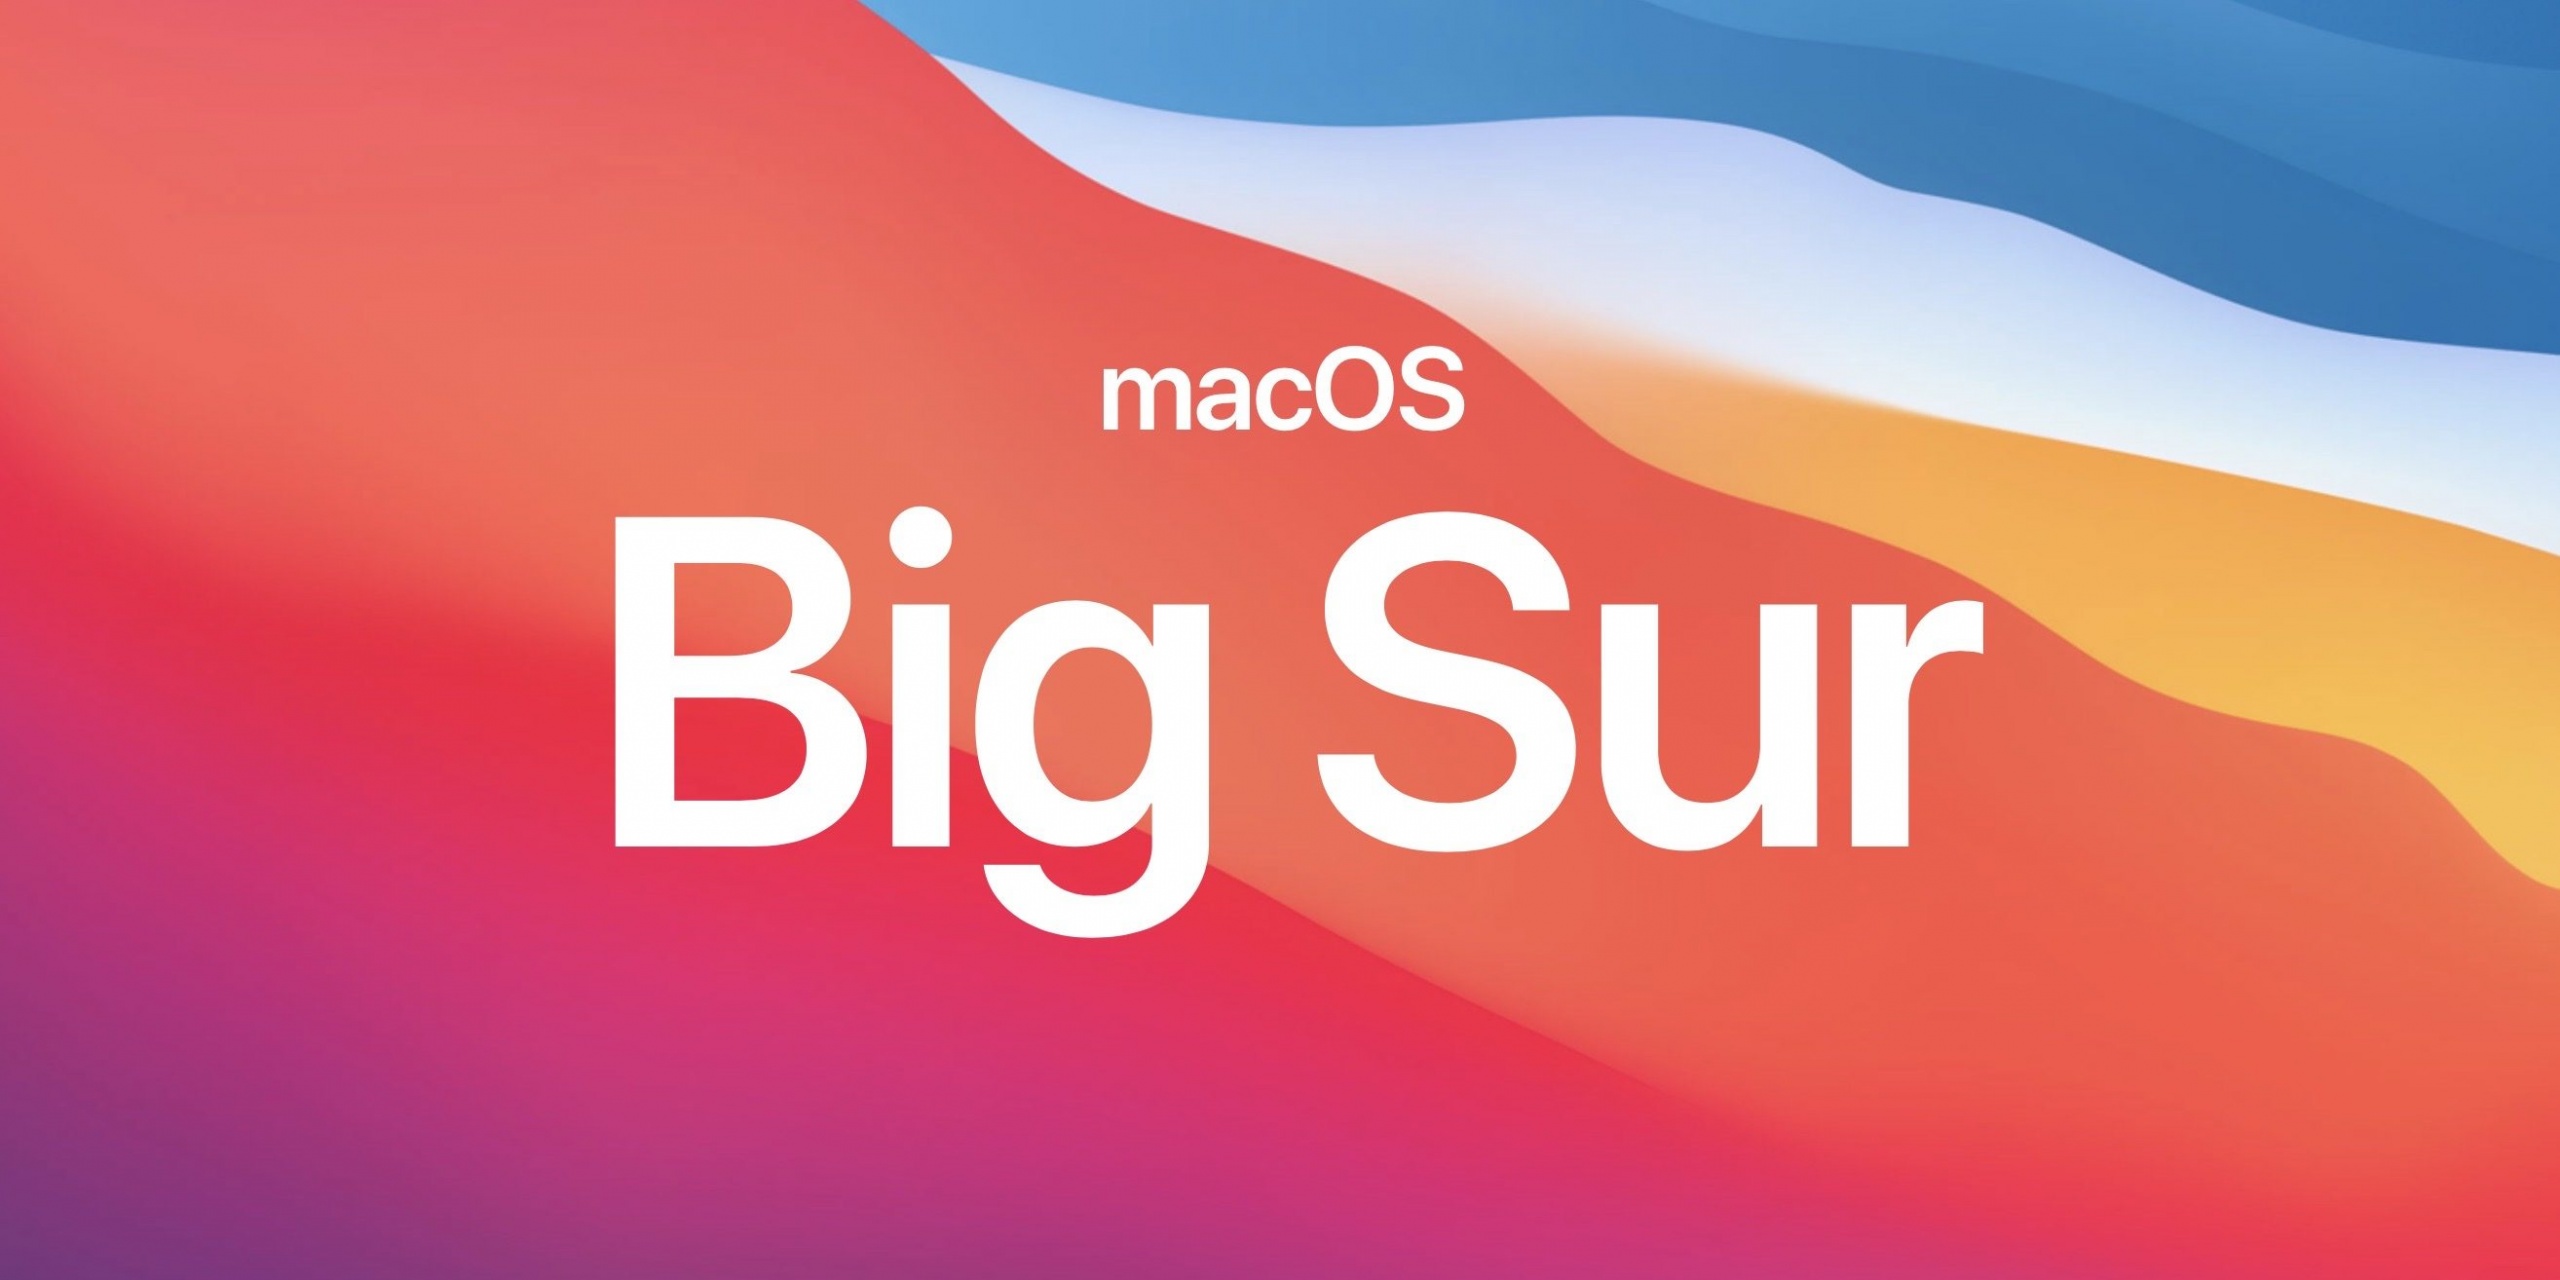 नई macOS बिग सूर एक बड़ी समस्या से पीड़ित है, जहां यह स्थापित होते ही पुराने मैकबुक प्रोस को ब्रिक्स करता है